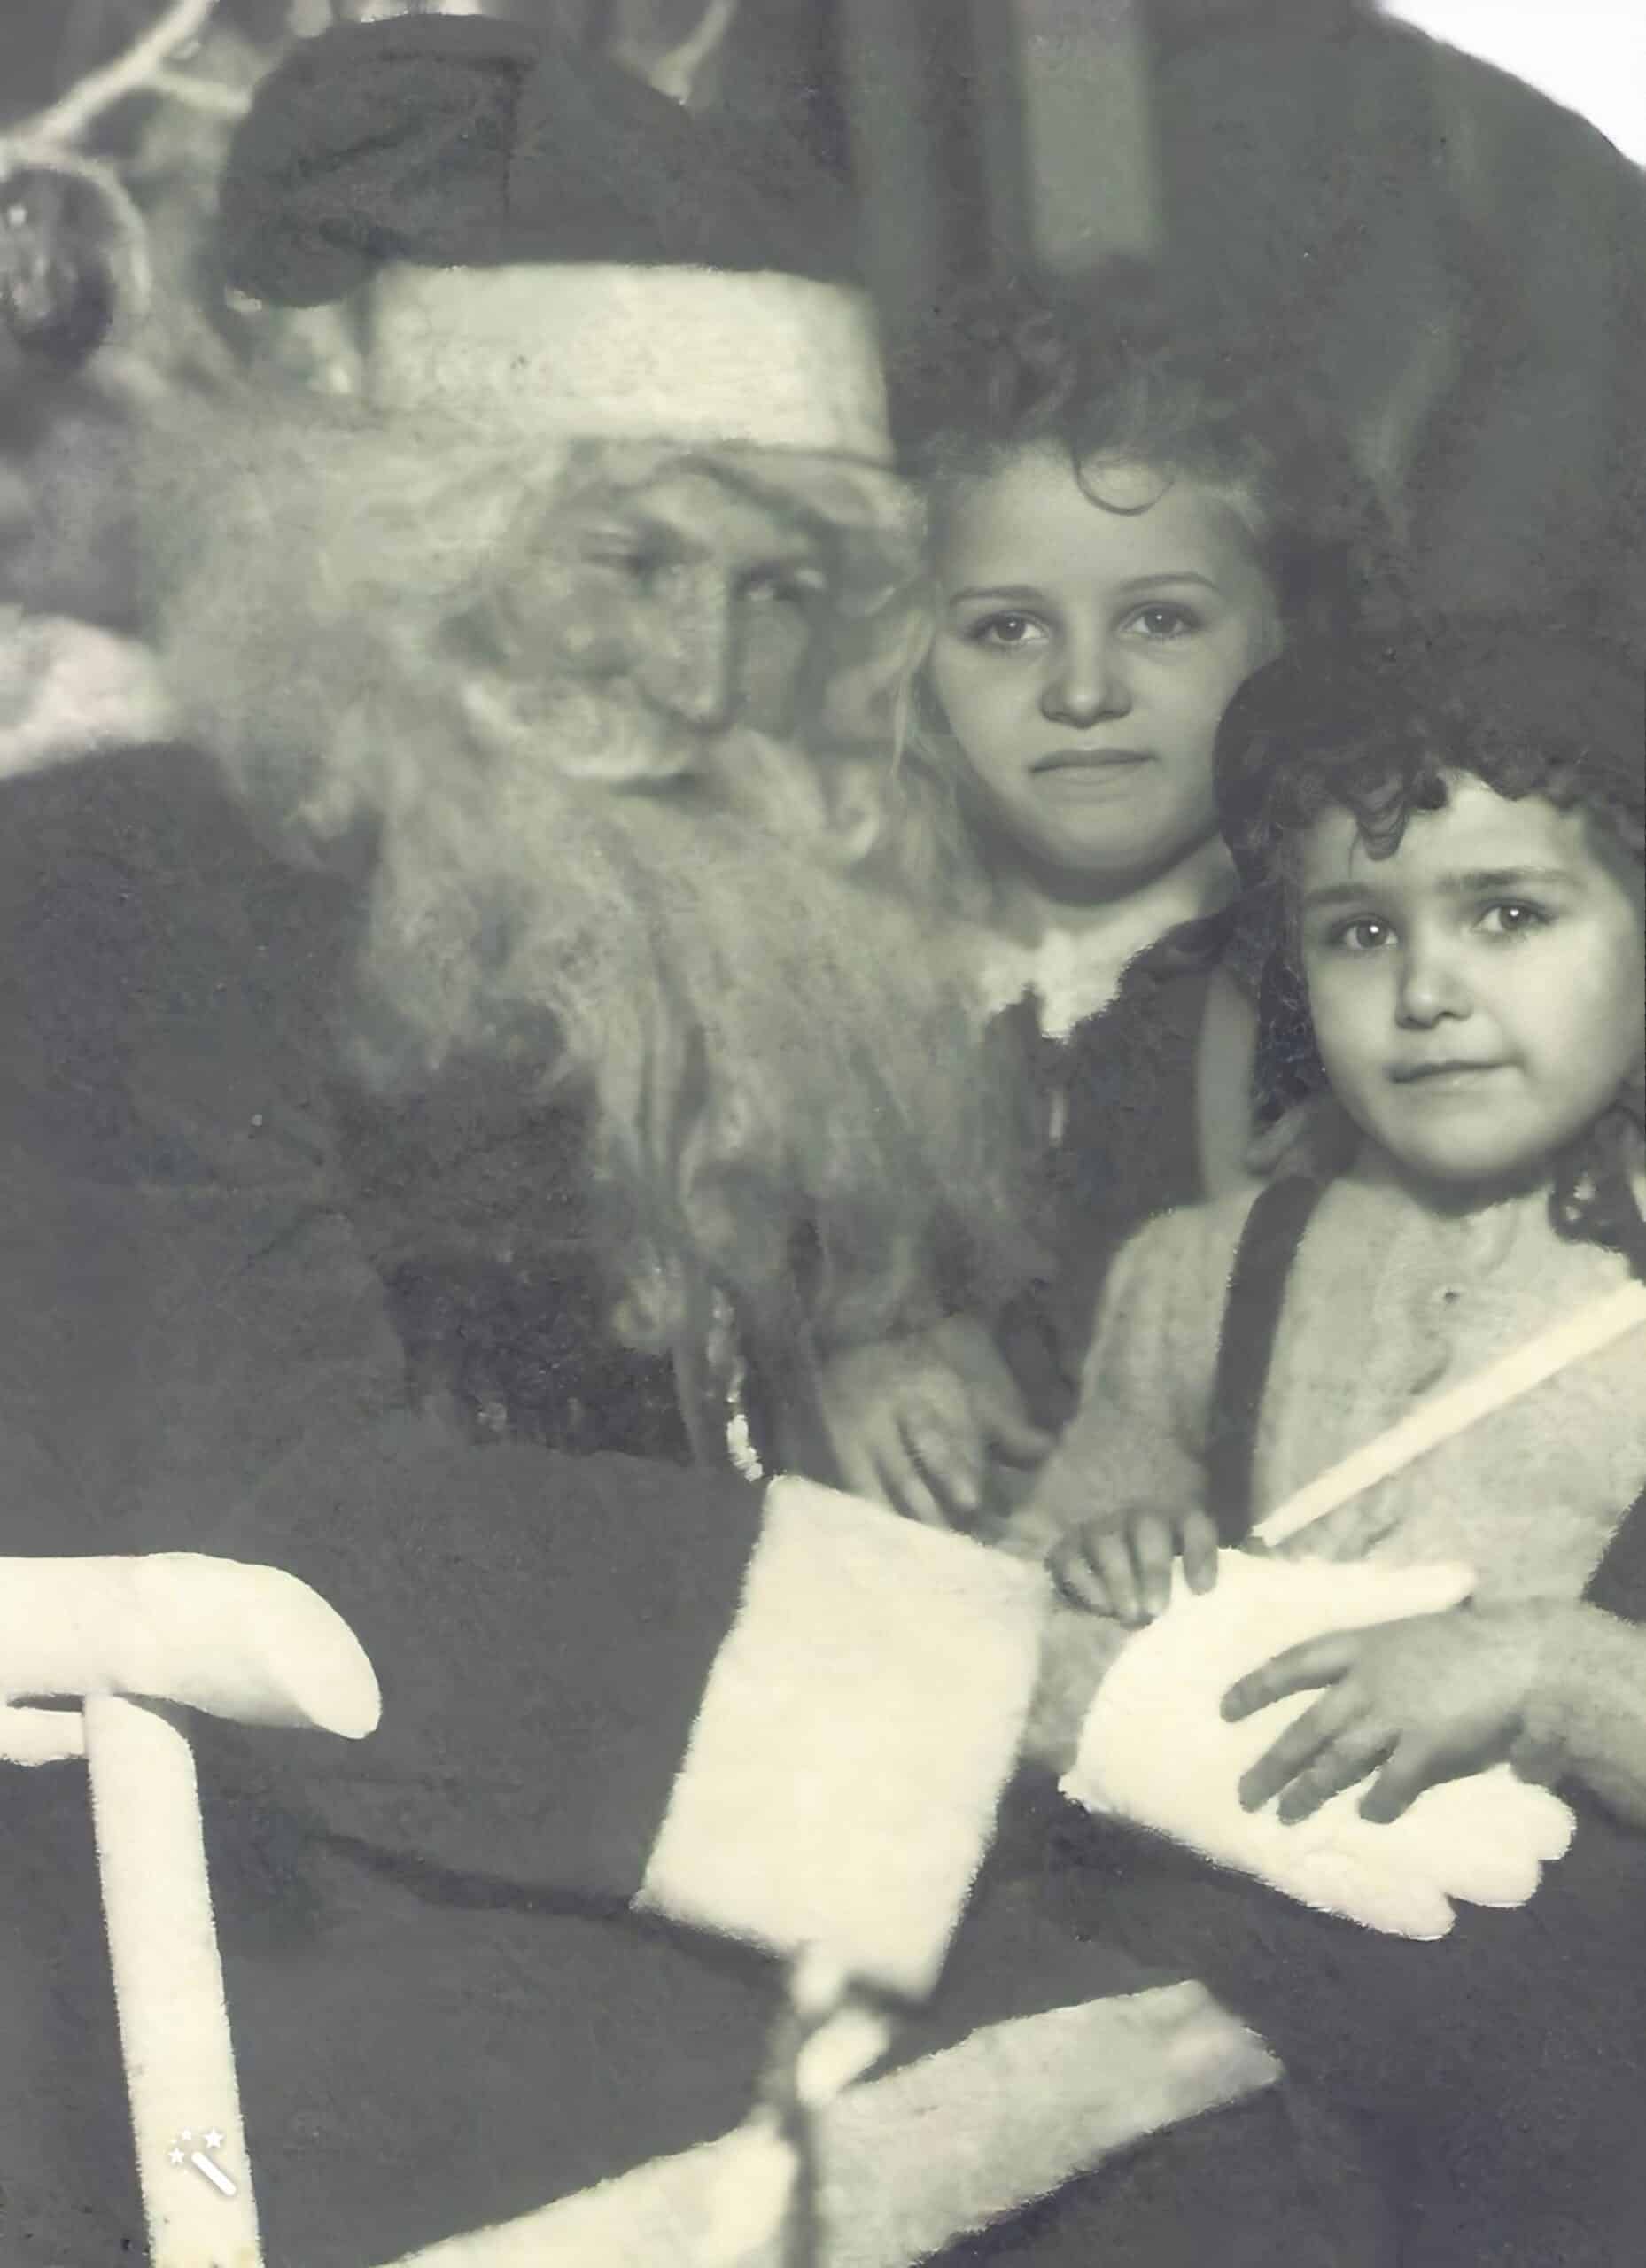 Carol und Roberta auf dem Schoß des Weihnachtsmanns. Verbessert und repariert mit MyHeritage